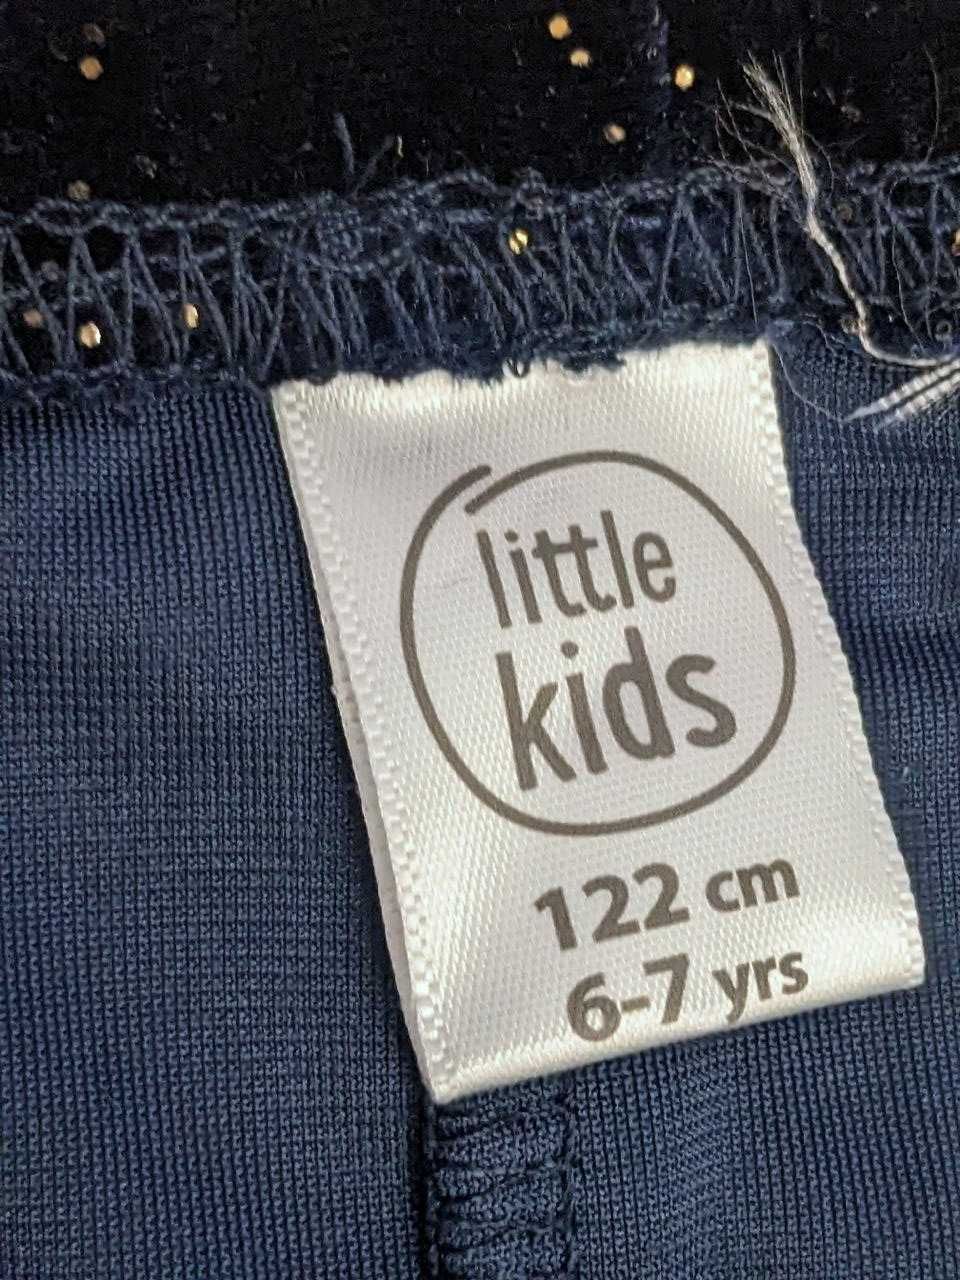 Набор лосины+майка/футболка Little Kids, размер 116-122см/6-7лет, лето